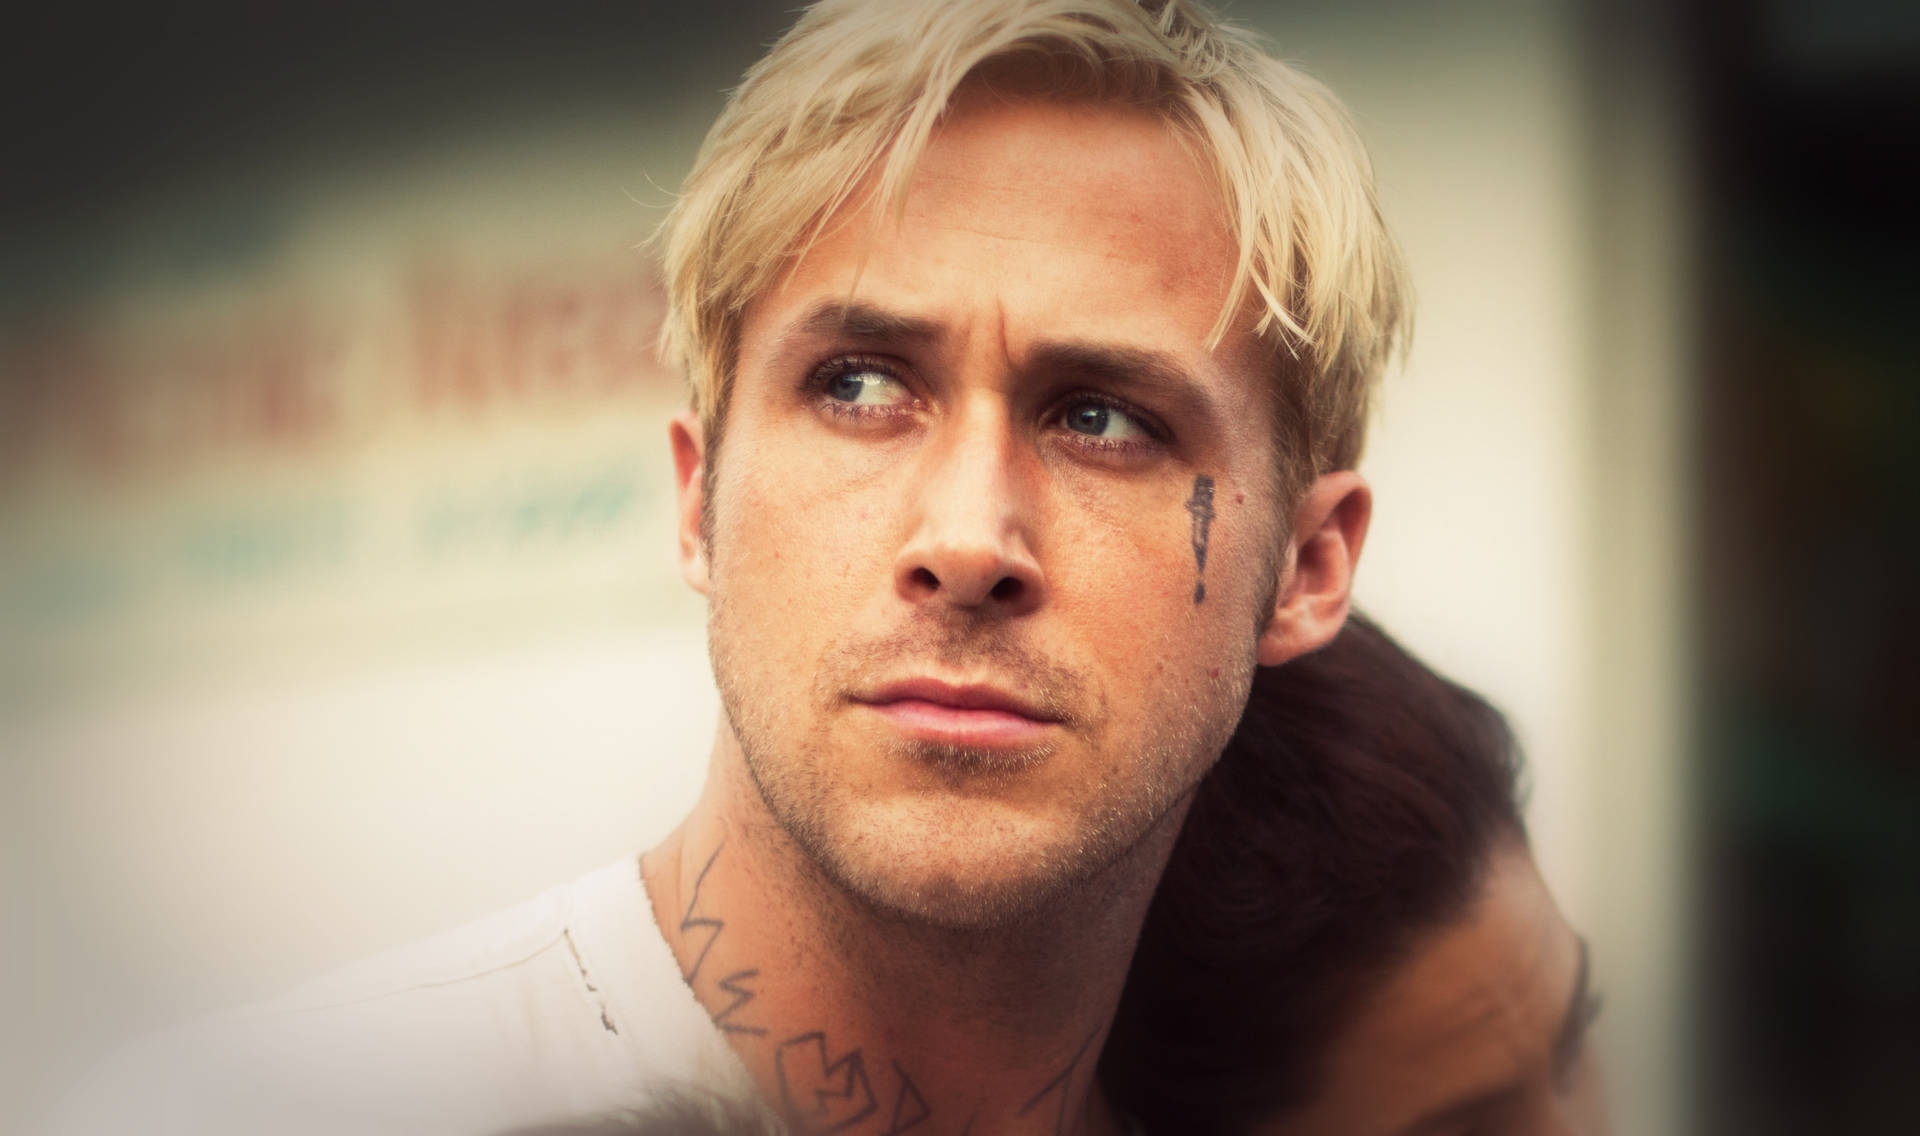 Free Ryan Gosling Wallpaper Downloads, [100+] Ryan Gosling Wallpapers for  FREE 